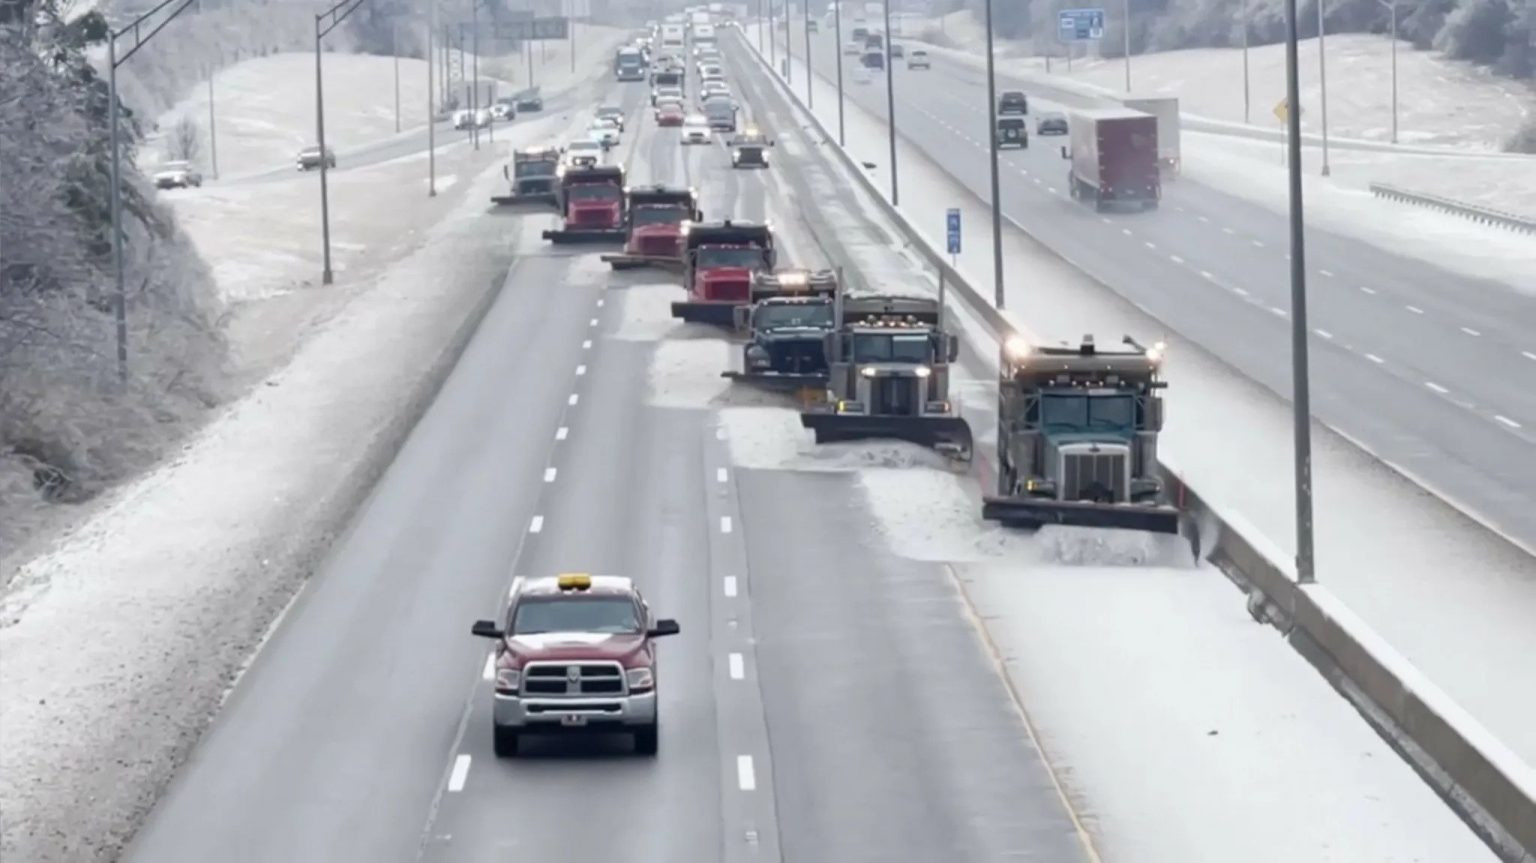 Δείτε βίντεο πως απομακρύνουν το χιόνι σε χρόνο ρεκόρ από μεγάλο αυτοκινητόδρομο στο εξωτερικό